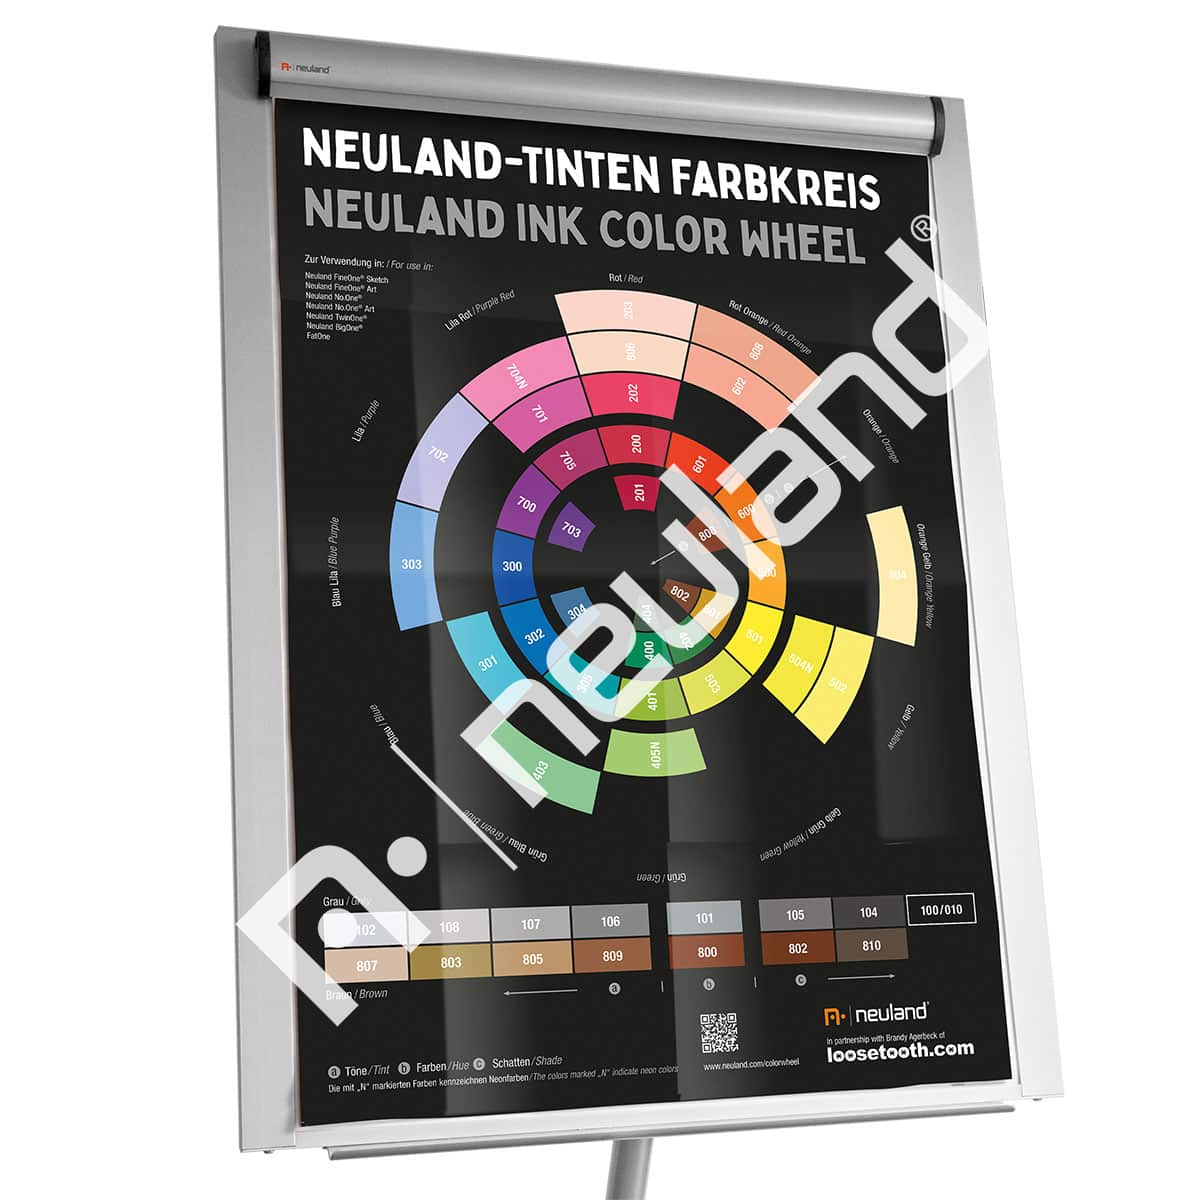 Neuland-Tinten Farbkreis Poster